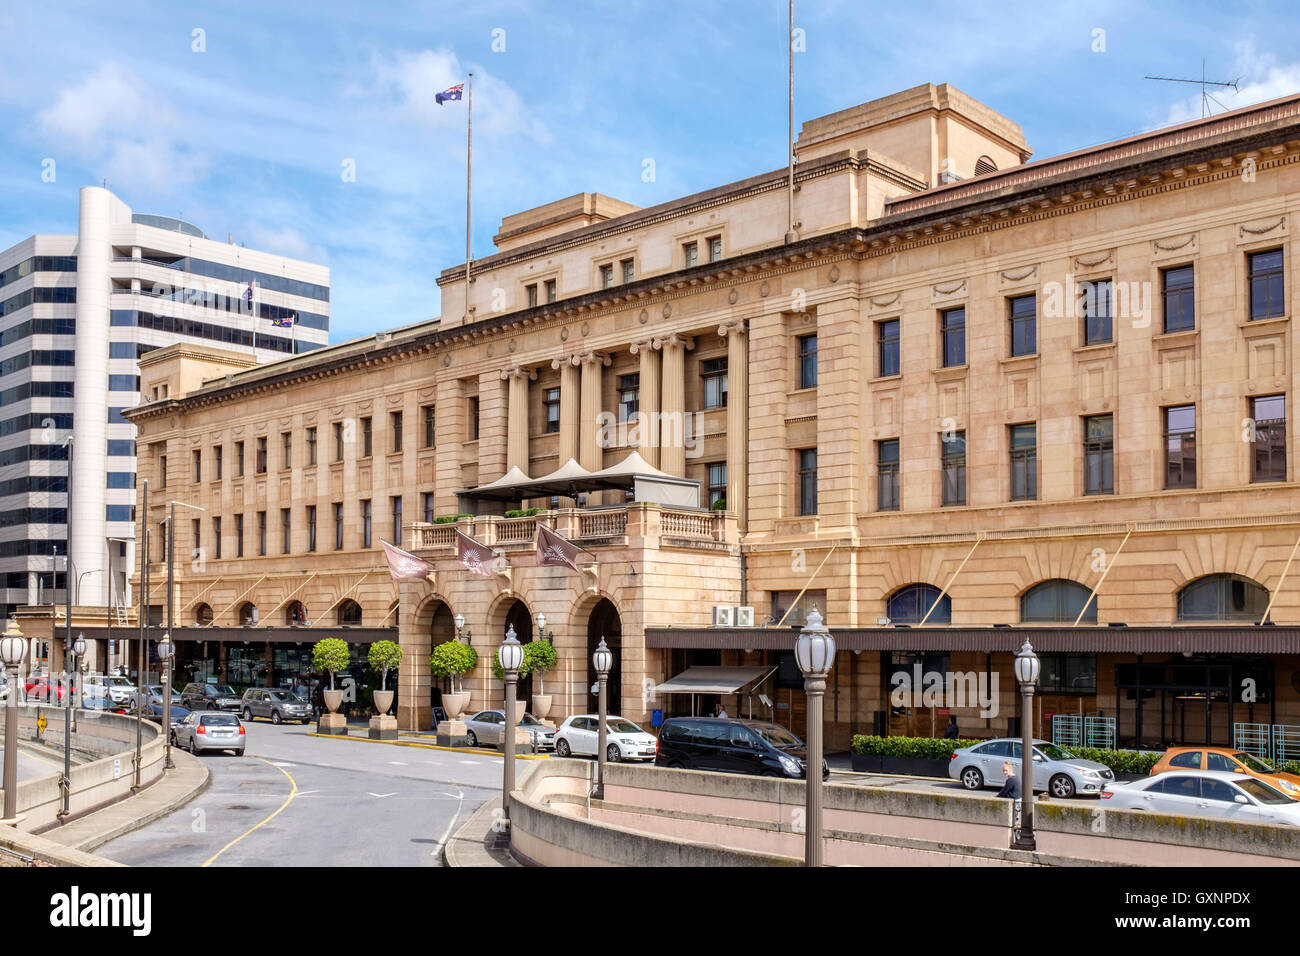 La façade ouvragée de l'architecture de l'Adelaide Casino Banque D'Images